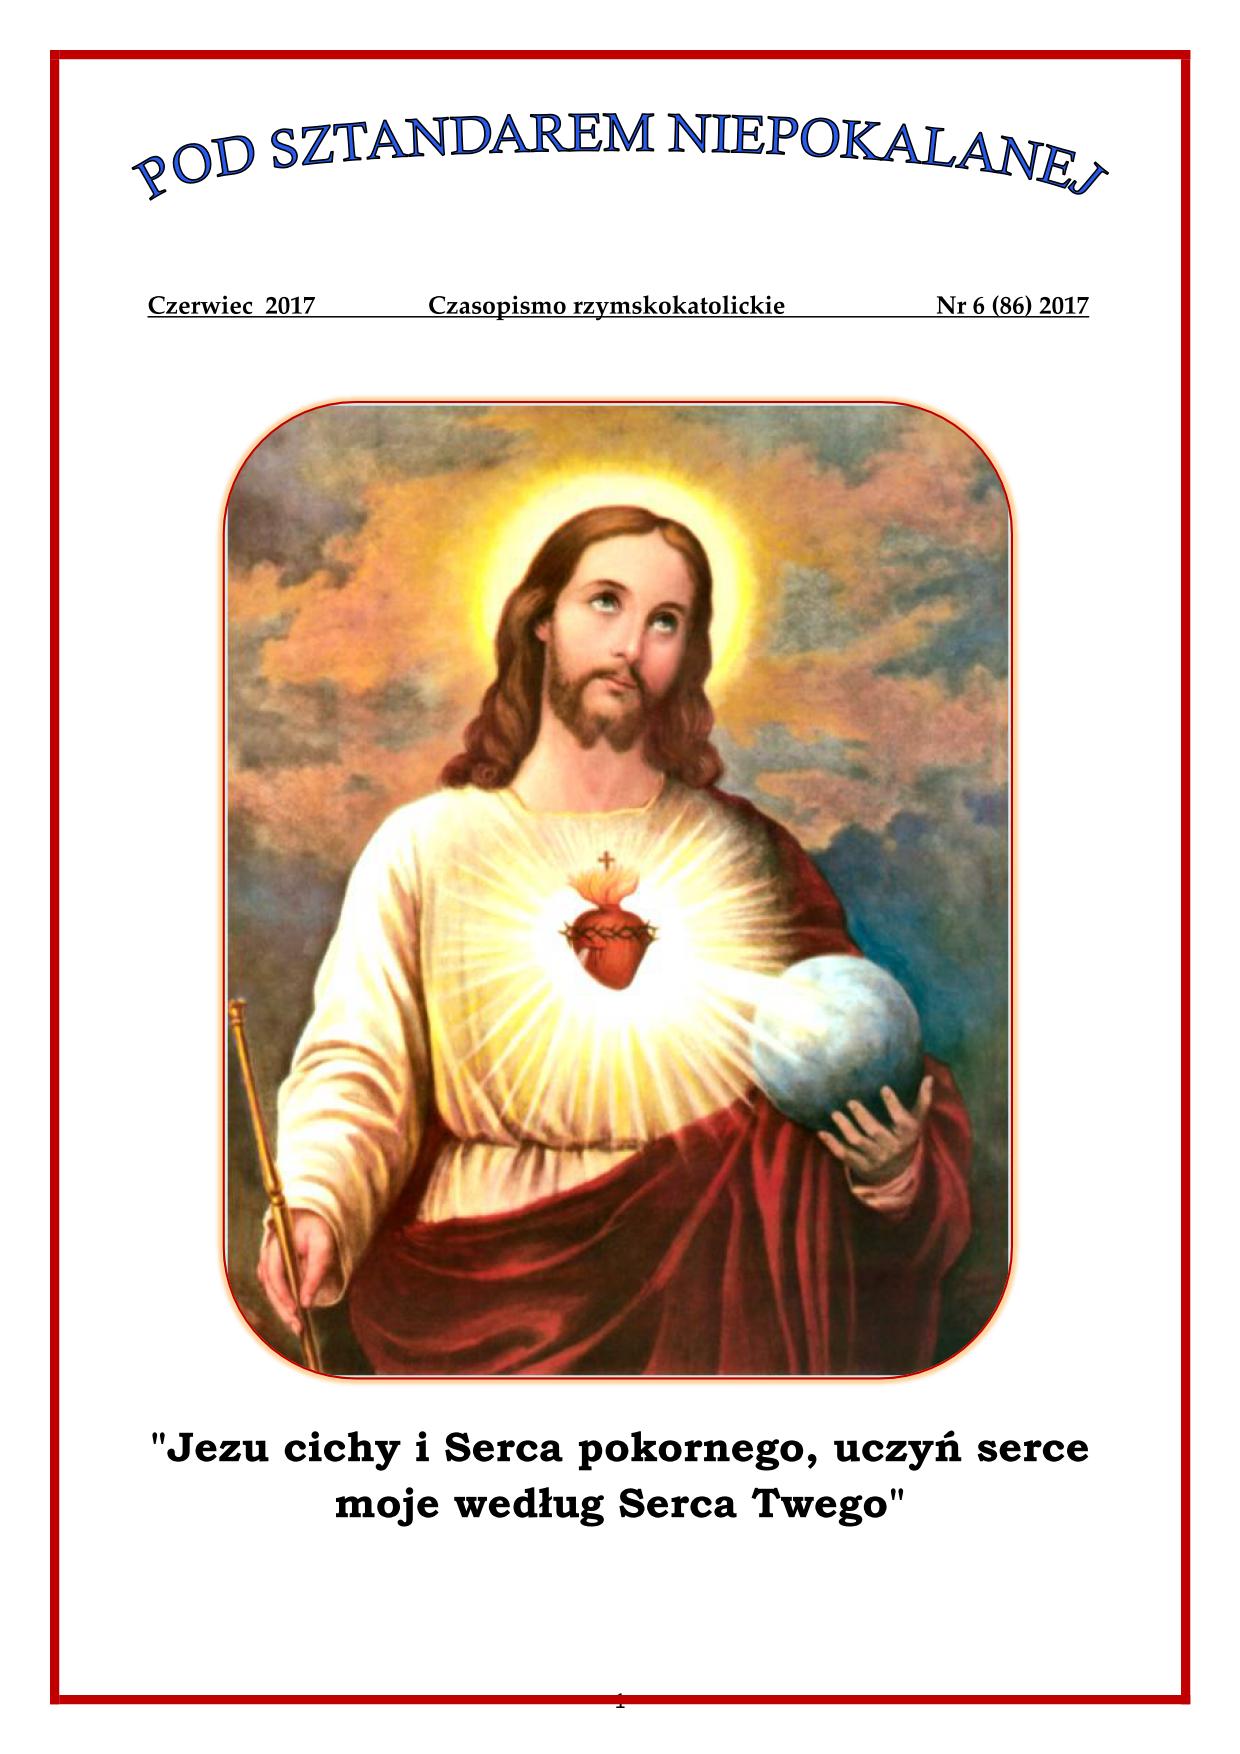 "Pod sztandarem Niepokalanej". Nr 86. Czerwiec 2017. Czasopismo rzymskokatolickie.